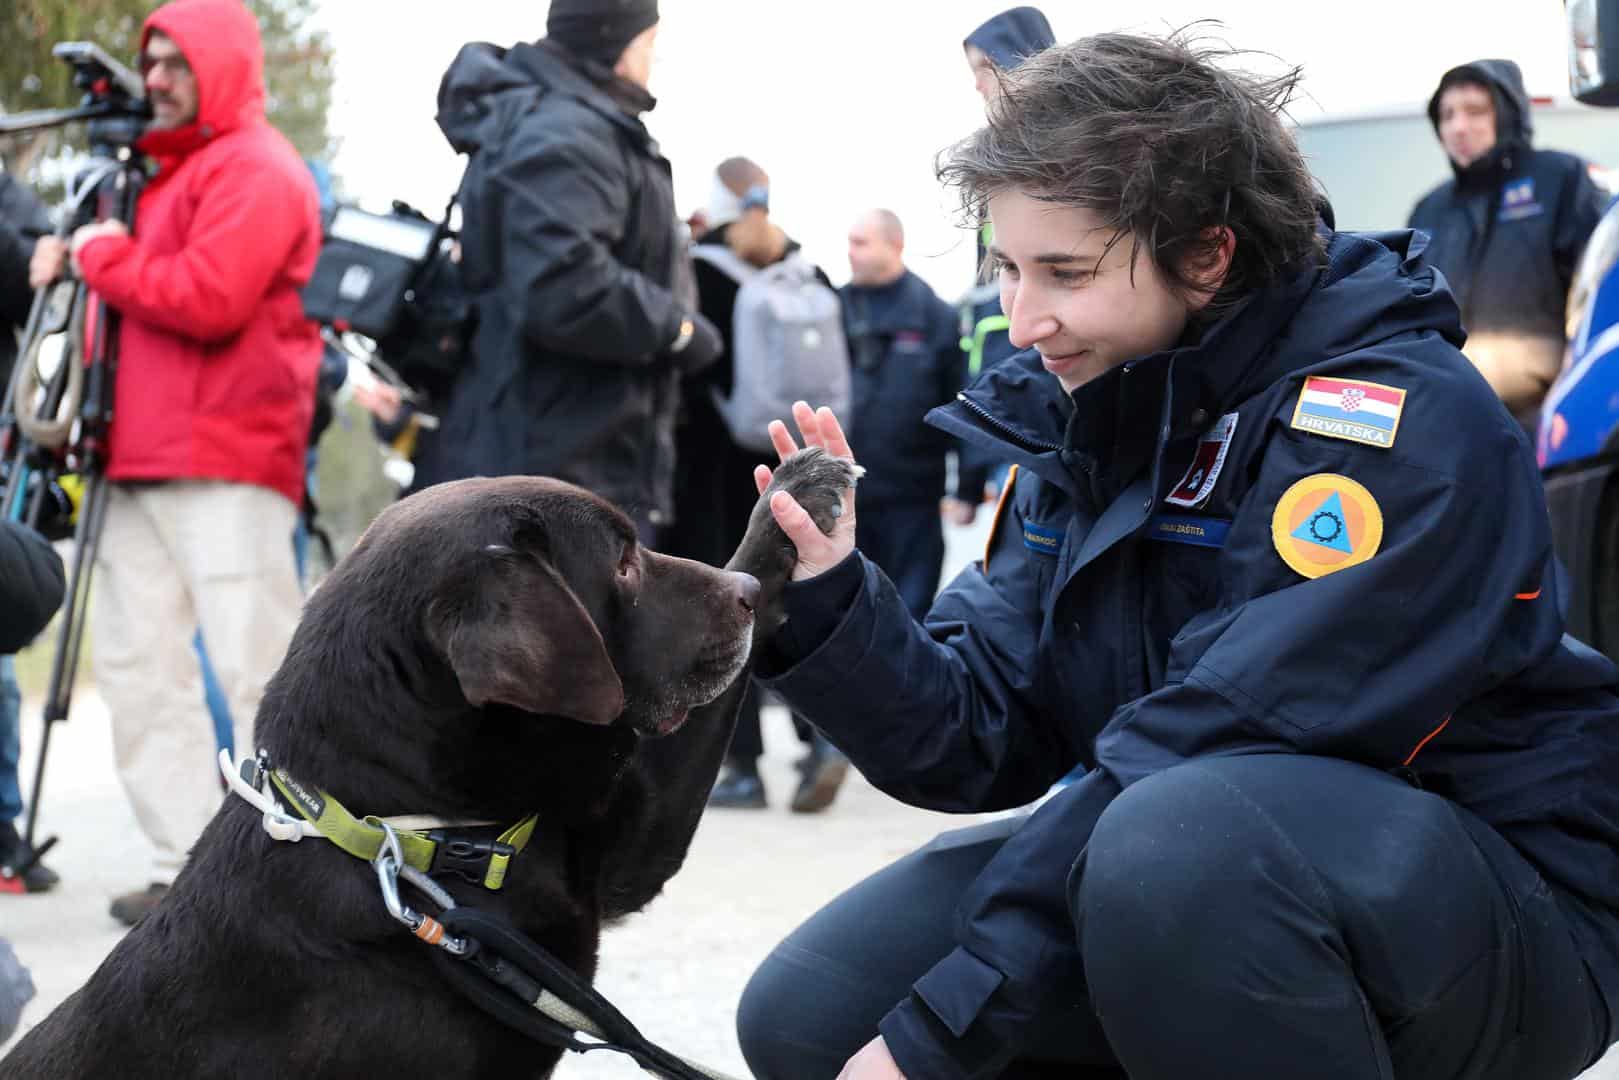 brave rescue dog Gizmo from Croatia